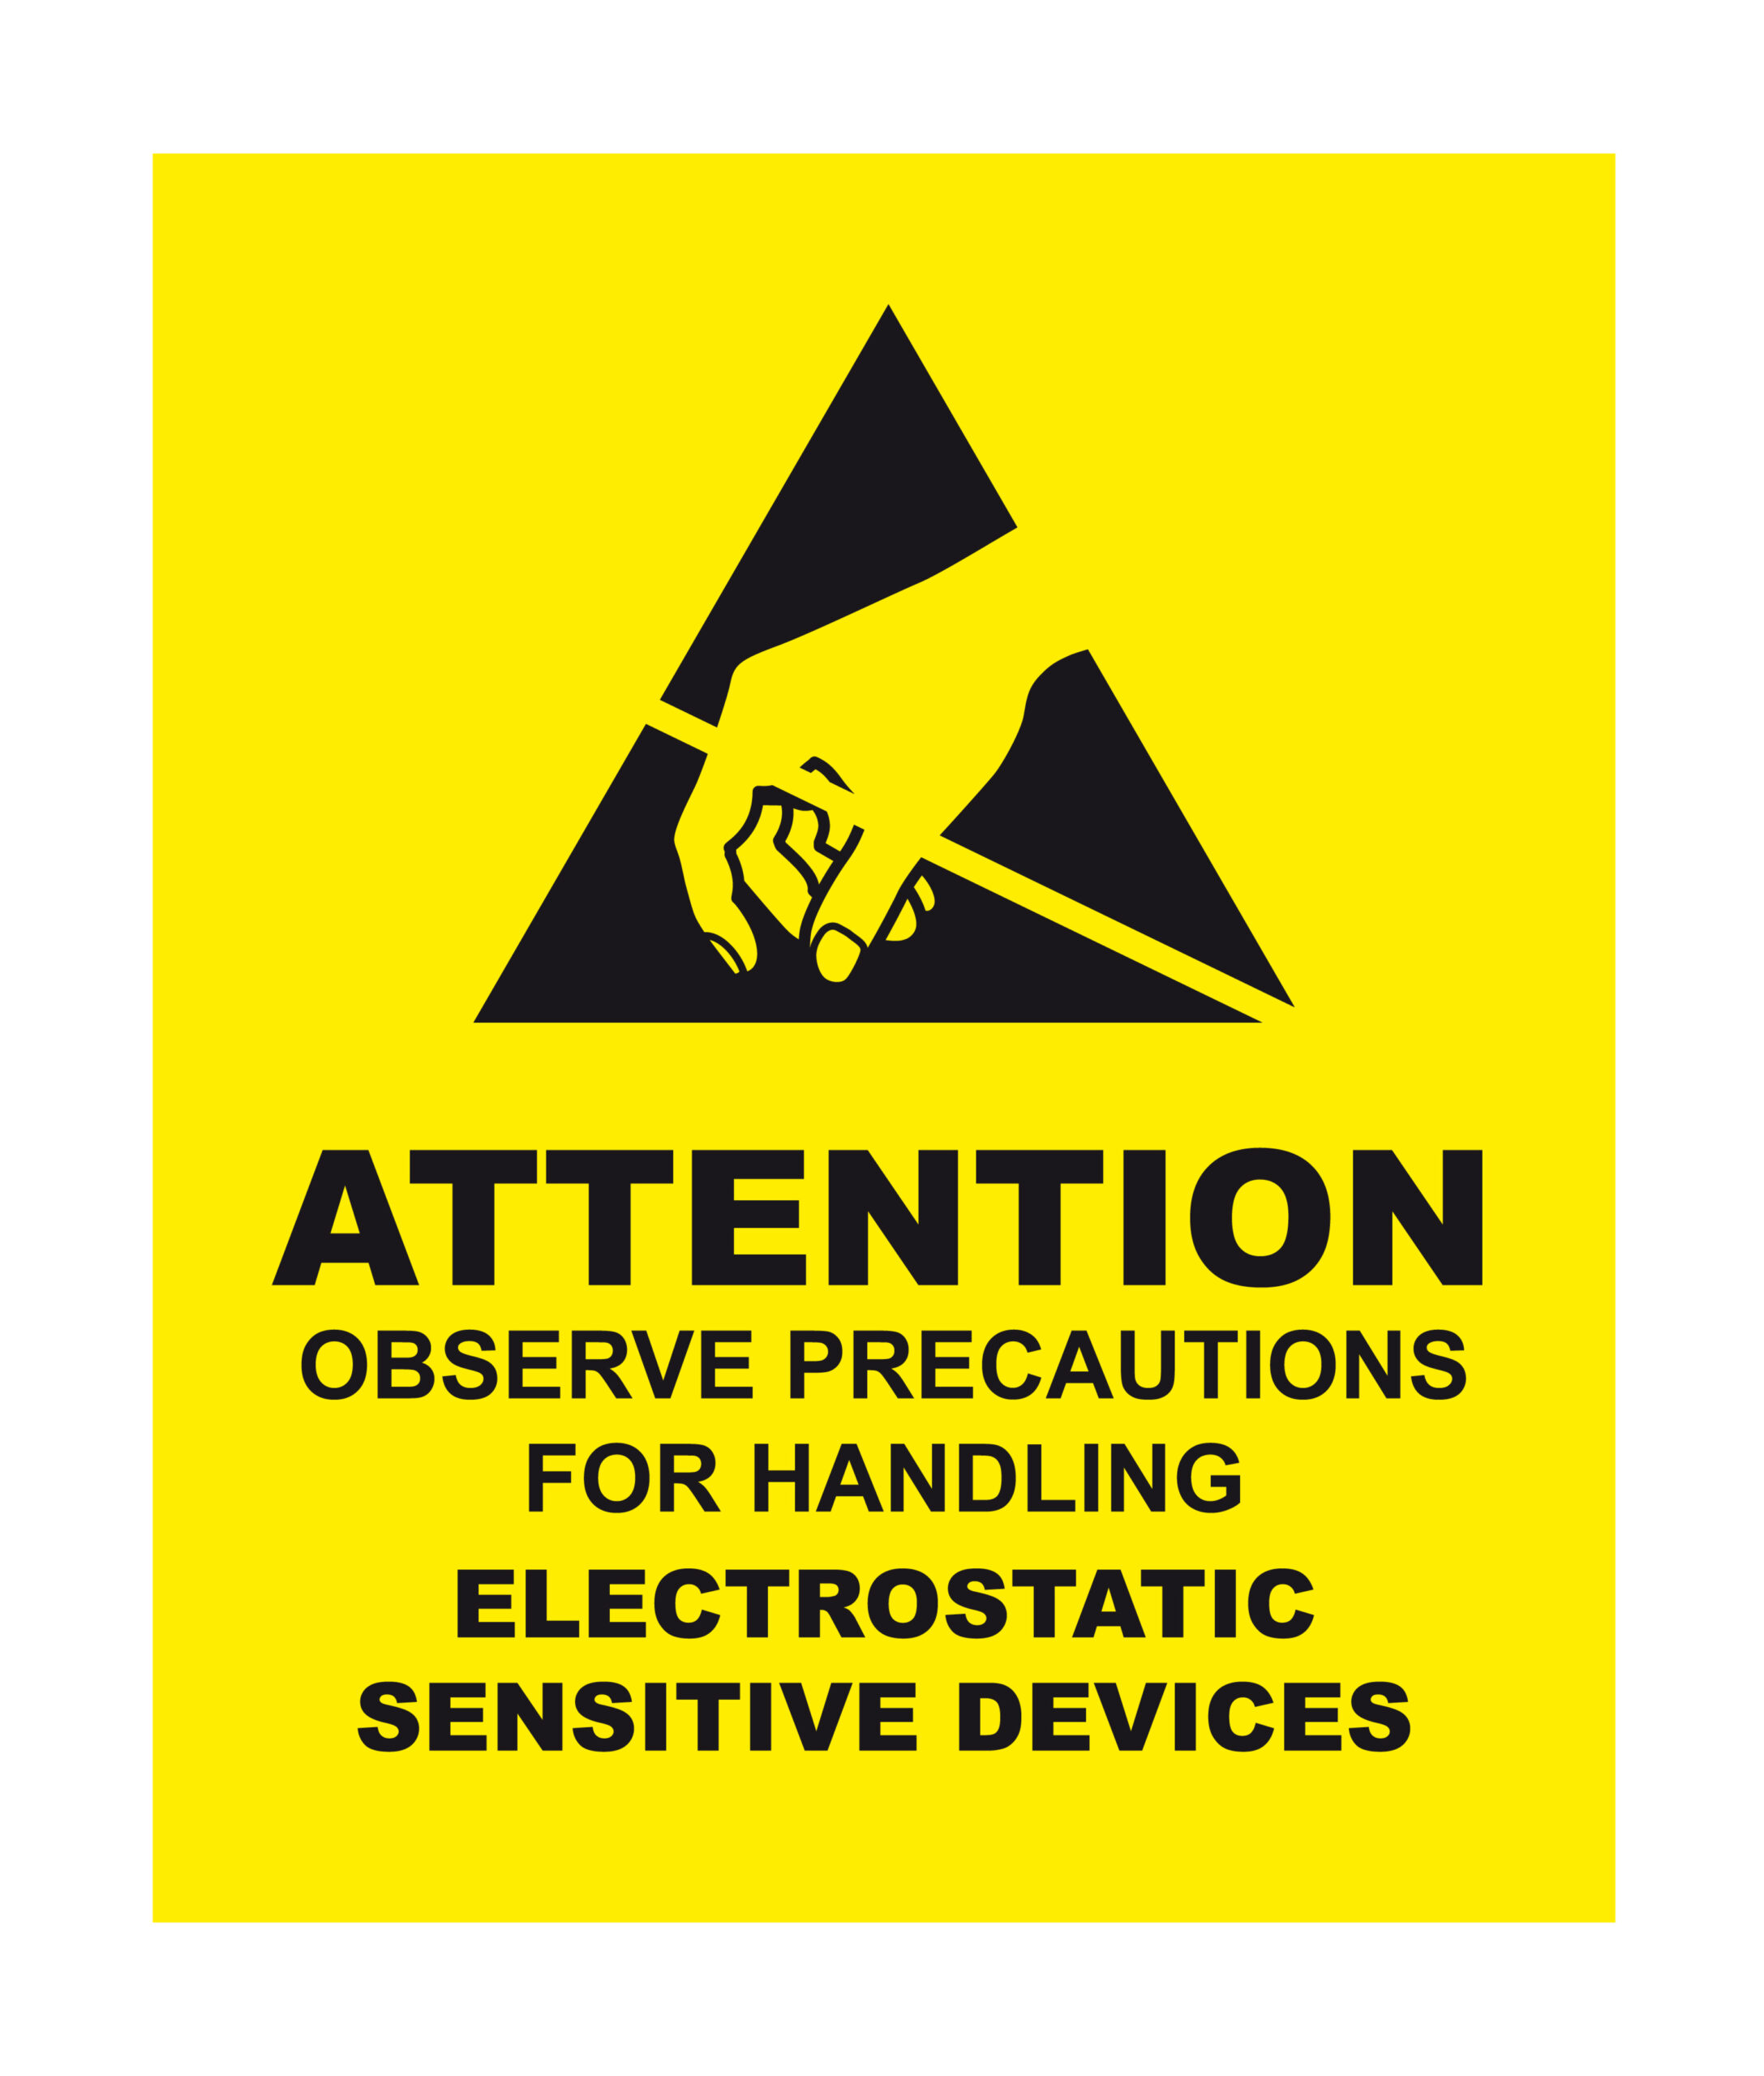 Sign alerting on electrostatic risk for sensitive devices